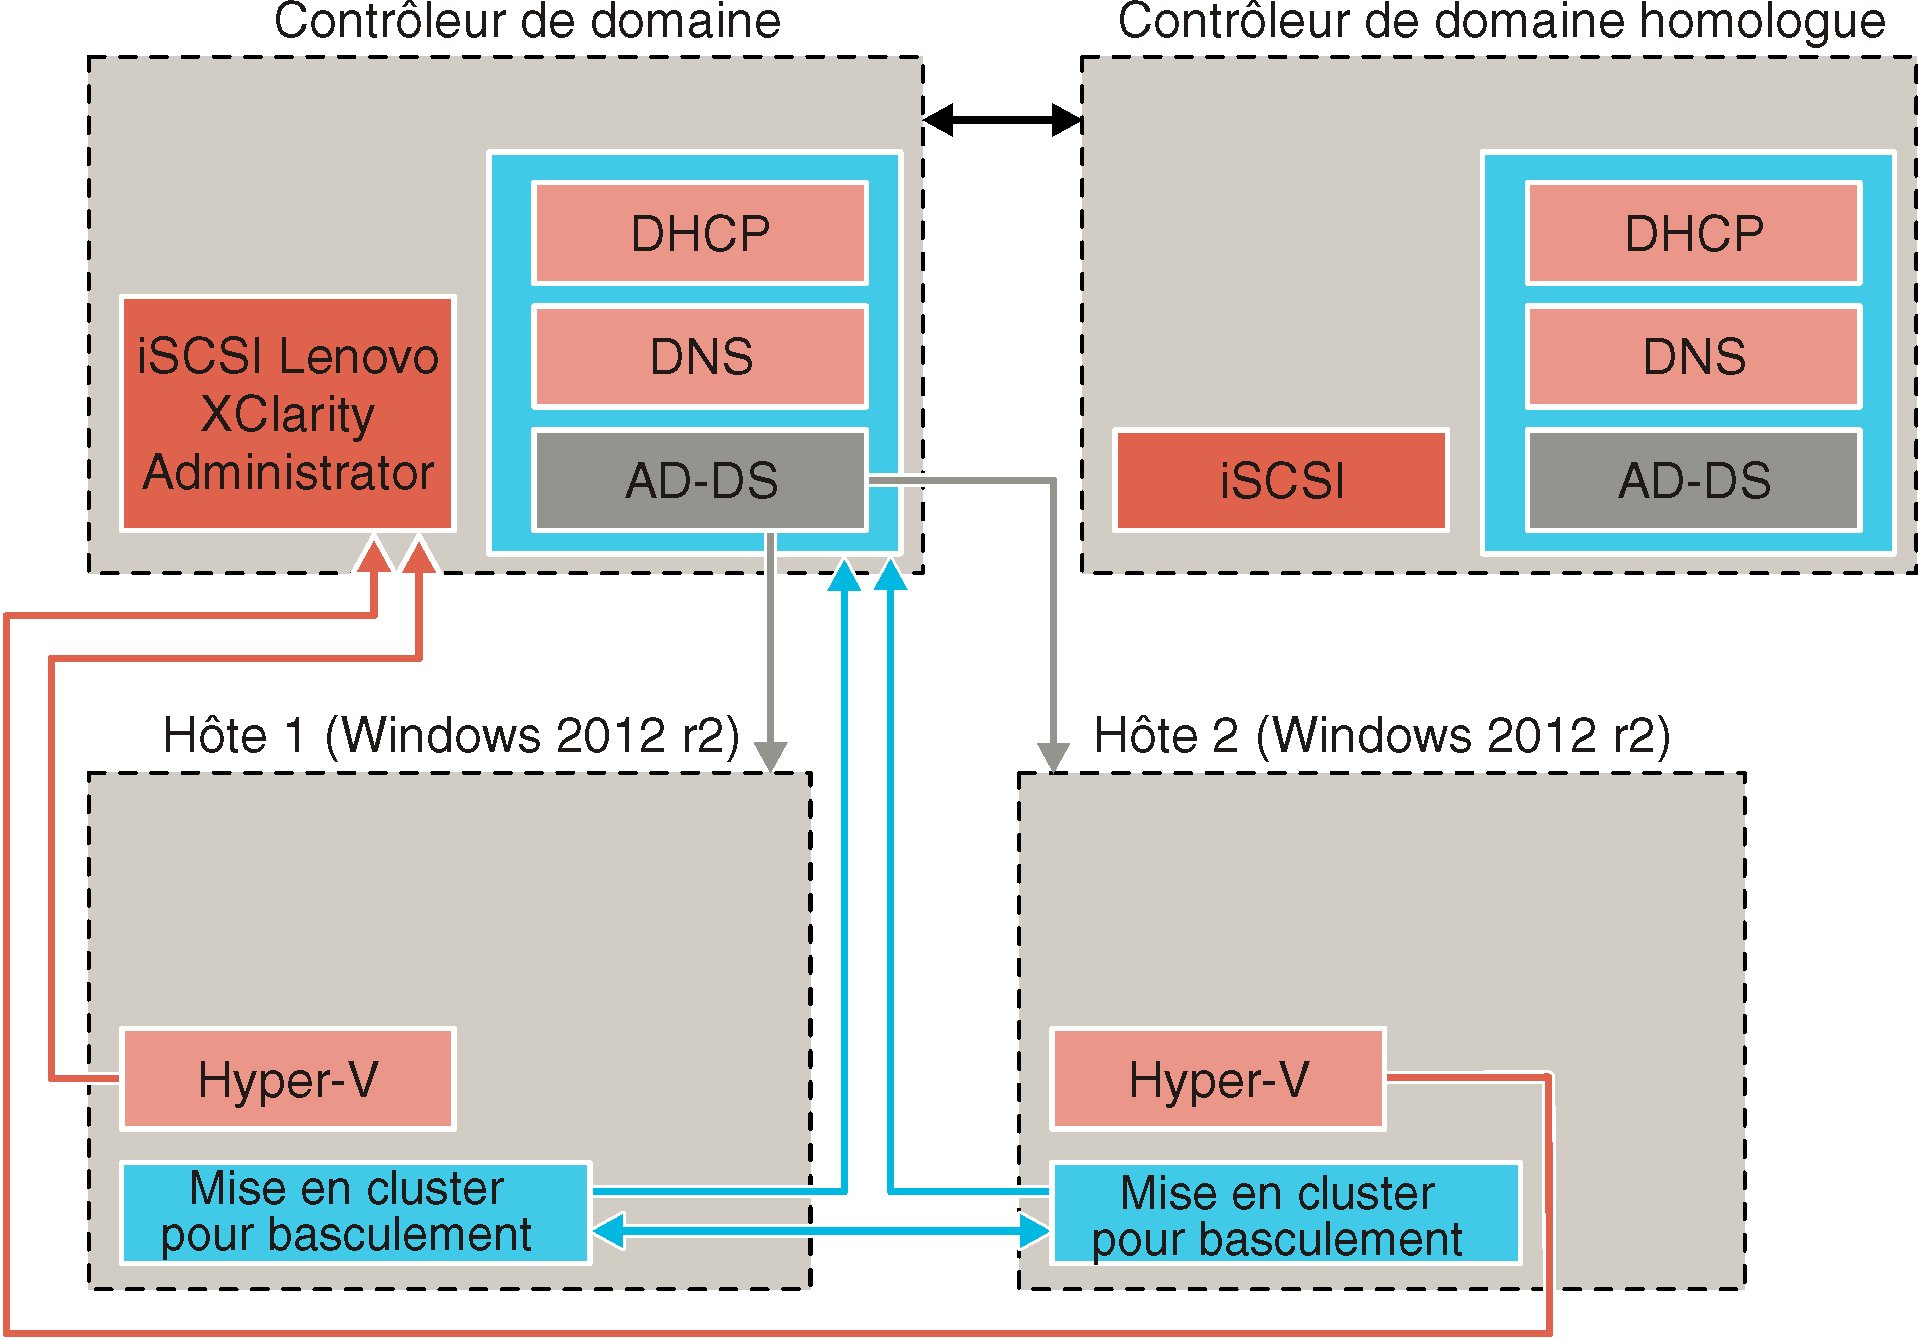 Illustre comment obtenir la haute disponibilité dans un environnement Microsoft Hyper-V